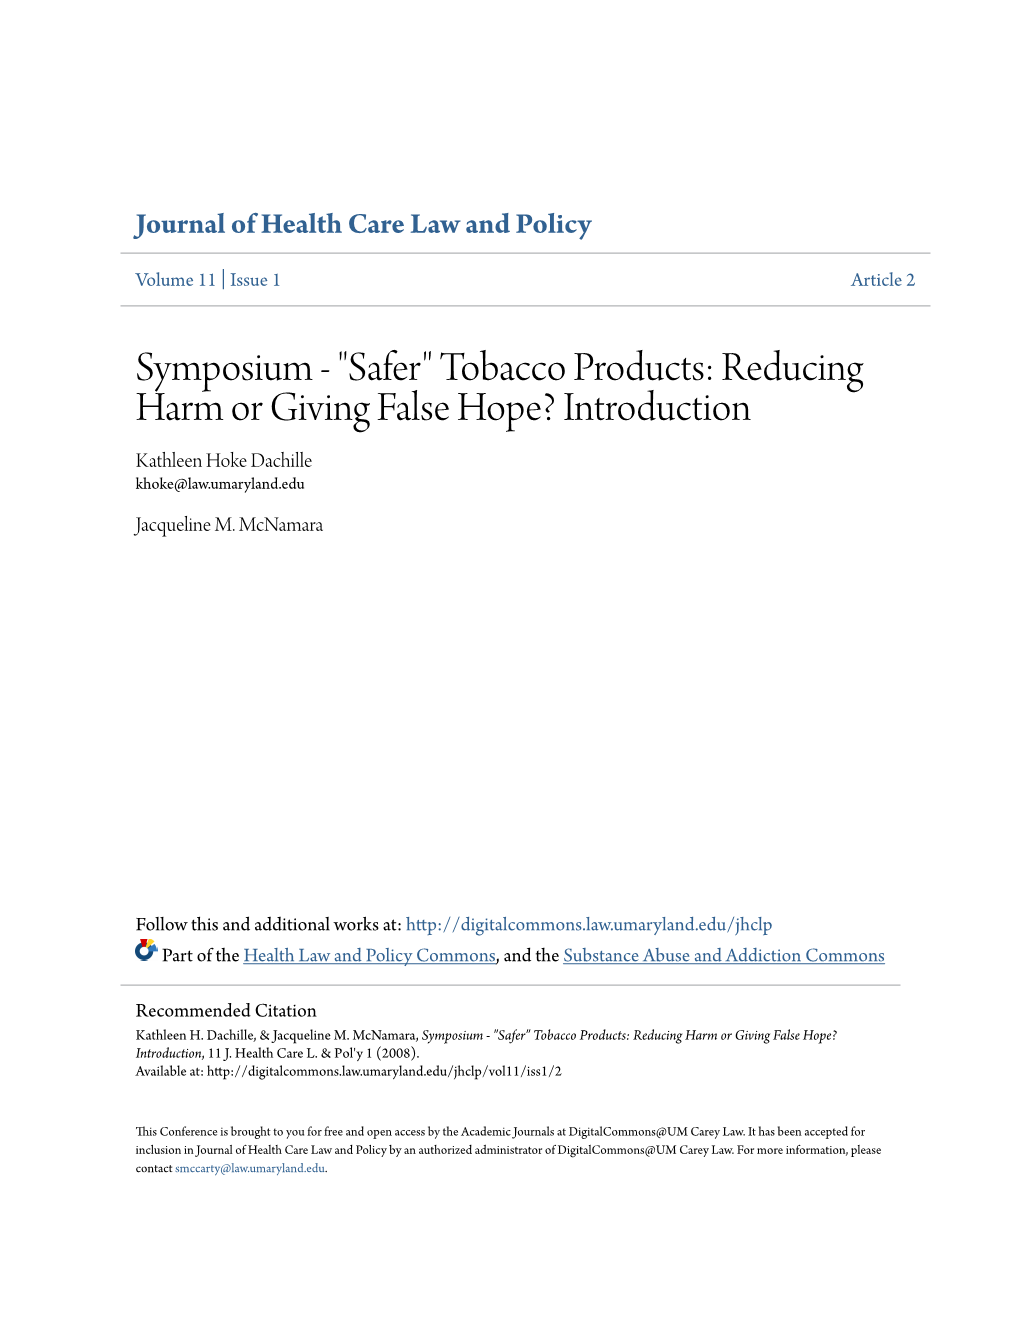 Tobacco Products: Reducing Harm Or Giving False Hope? Introduction Kathleen Hoke Dachille Khoke@Law.Umaryland.Edu